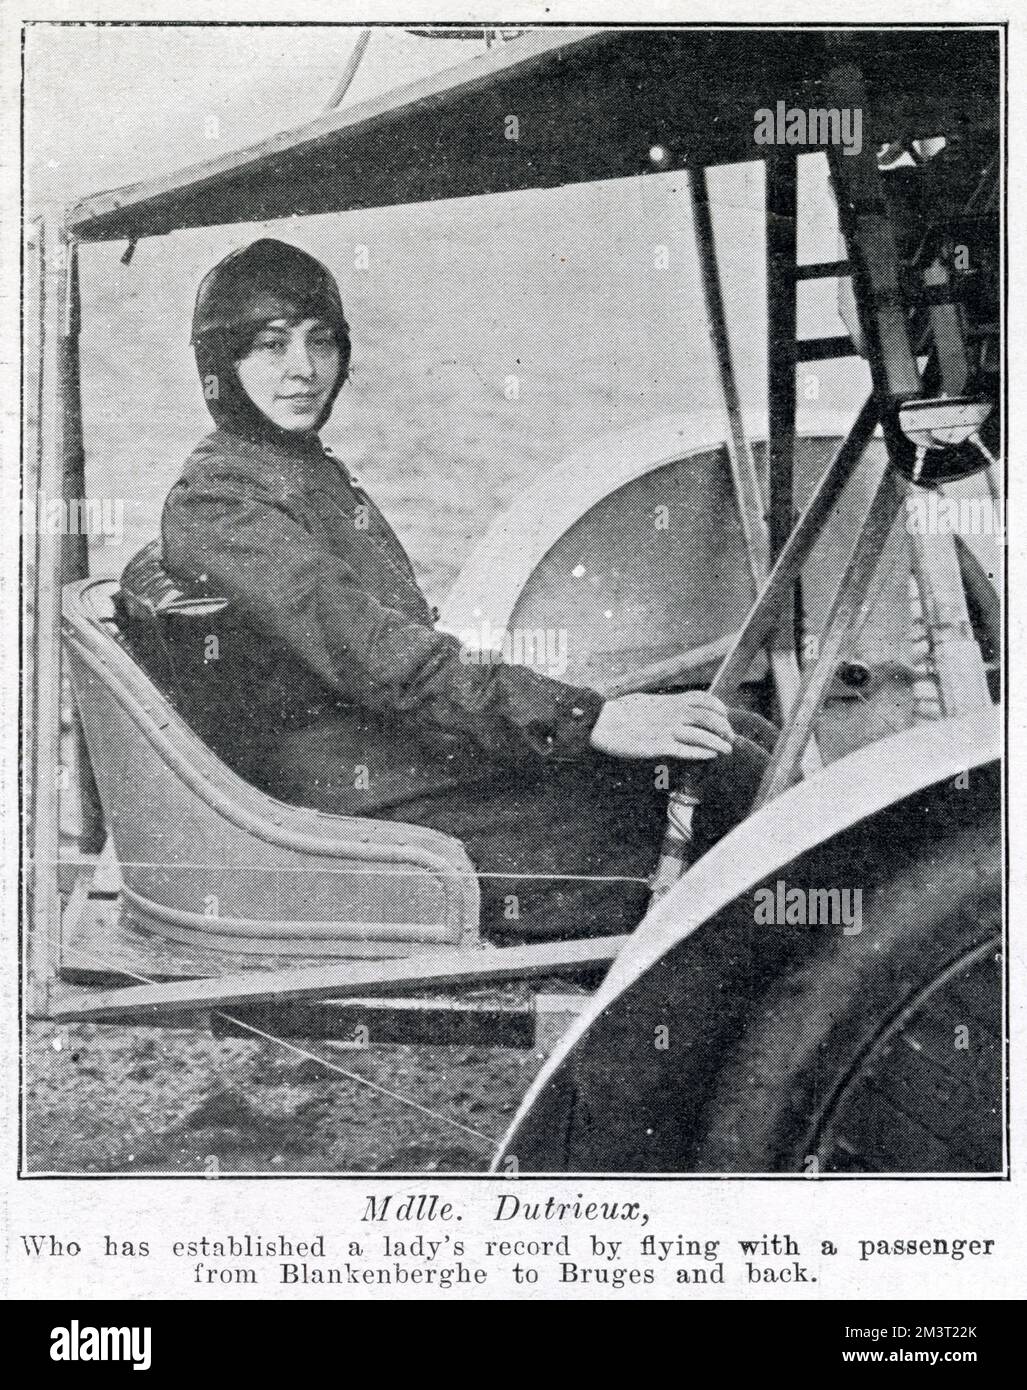 Hélène Dutrieu (1877-1961), belgischer Weltmeister für Radfahrer, Automobil-Rennfahrer, Stuntfahrer, Radfahrer und Motorradfahrer sowie Pionier-Piloten. Am 25. November 1910 wurde Dutrieu die vierte Frau der Welt und die erste belgische Frau, die als Flugzeugpilotin zugelassen war, erhielt den Spitznamen „Girl Hawk“. Das Foto wurde nach ihrem Flug am 3. September 1910 aufgenommen, als sie früh am Morgen in ihrem Doppeldecker mit ihrem Mechaniker Beaud als Passagier flog, ohne Zwischenstopp von Blankenberge nach Brügge und zurück, der erste Überlandflug zwischen zwei belgischen Städten mit einer Pilotin. Stockfoto